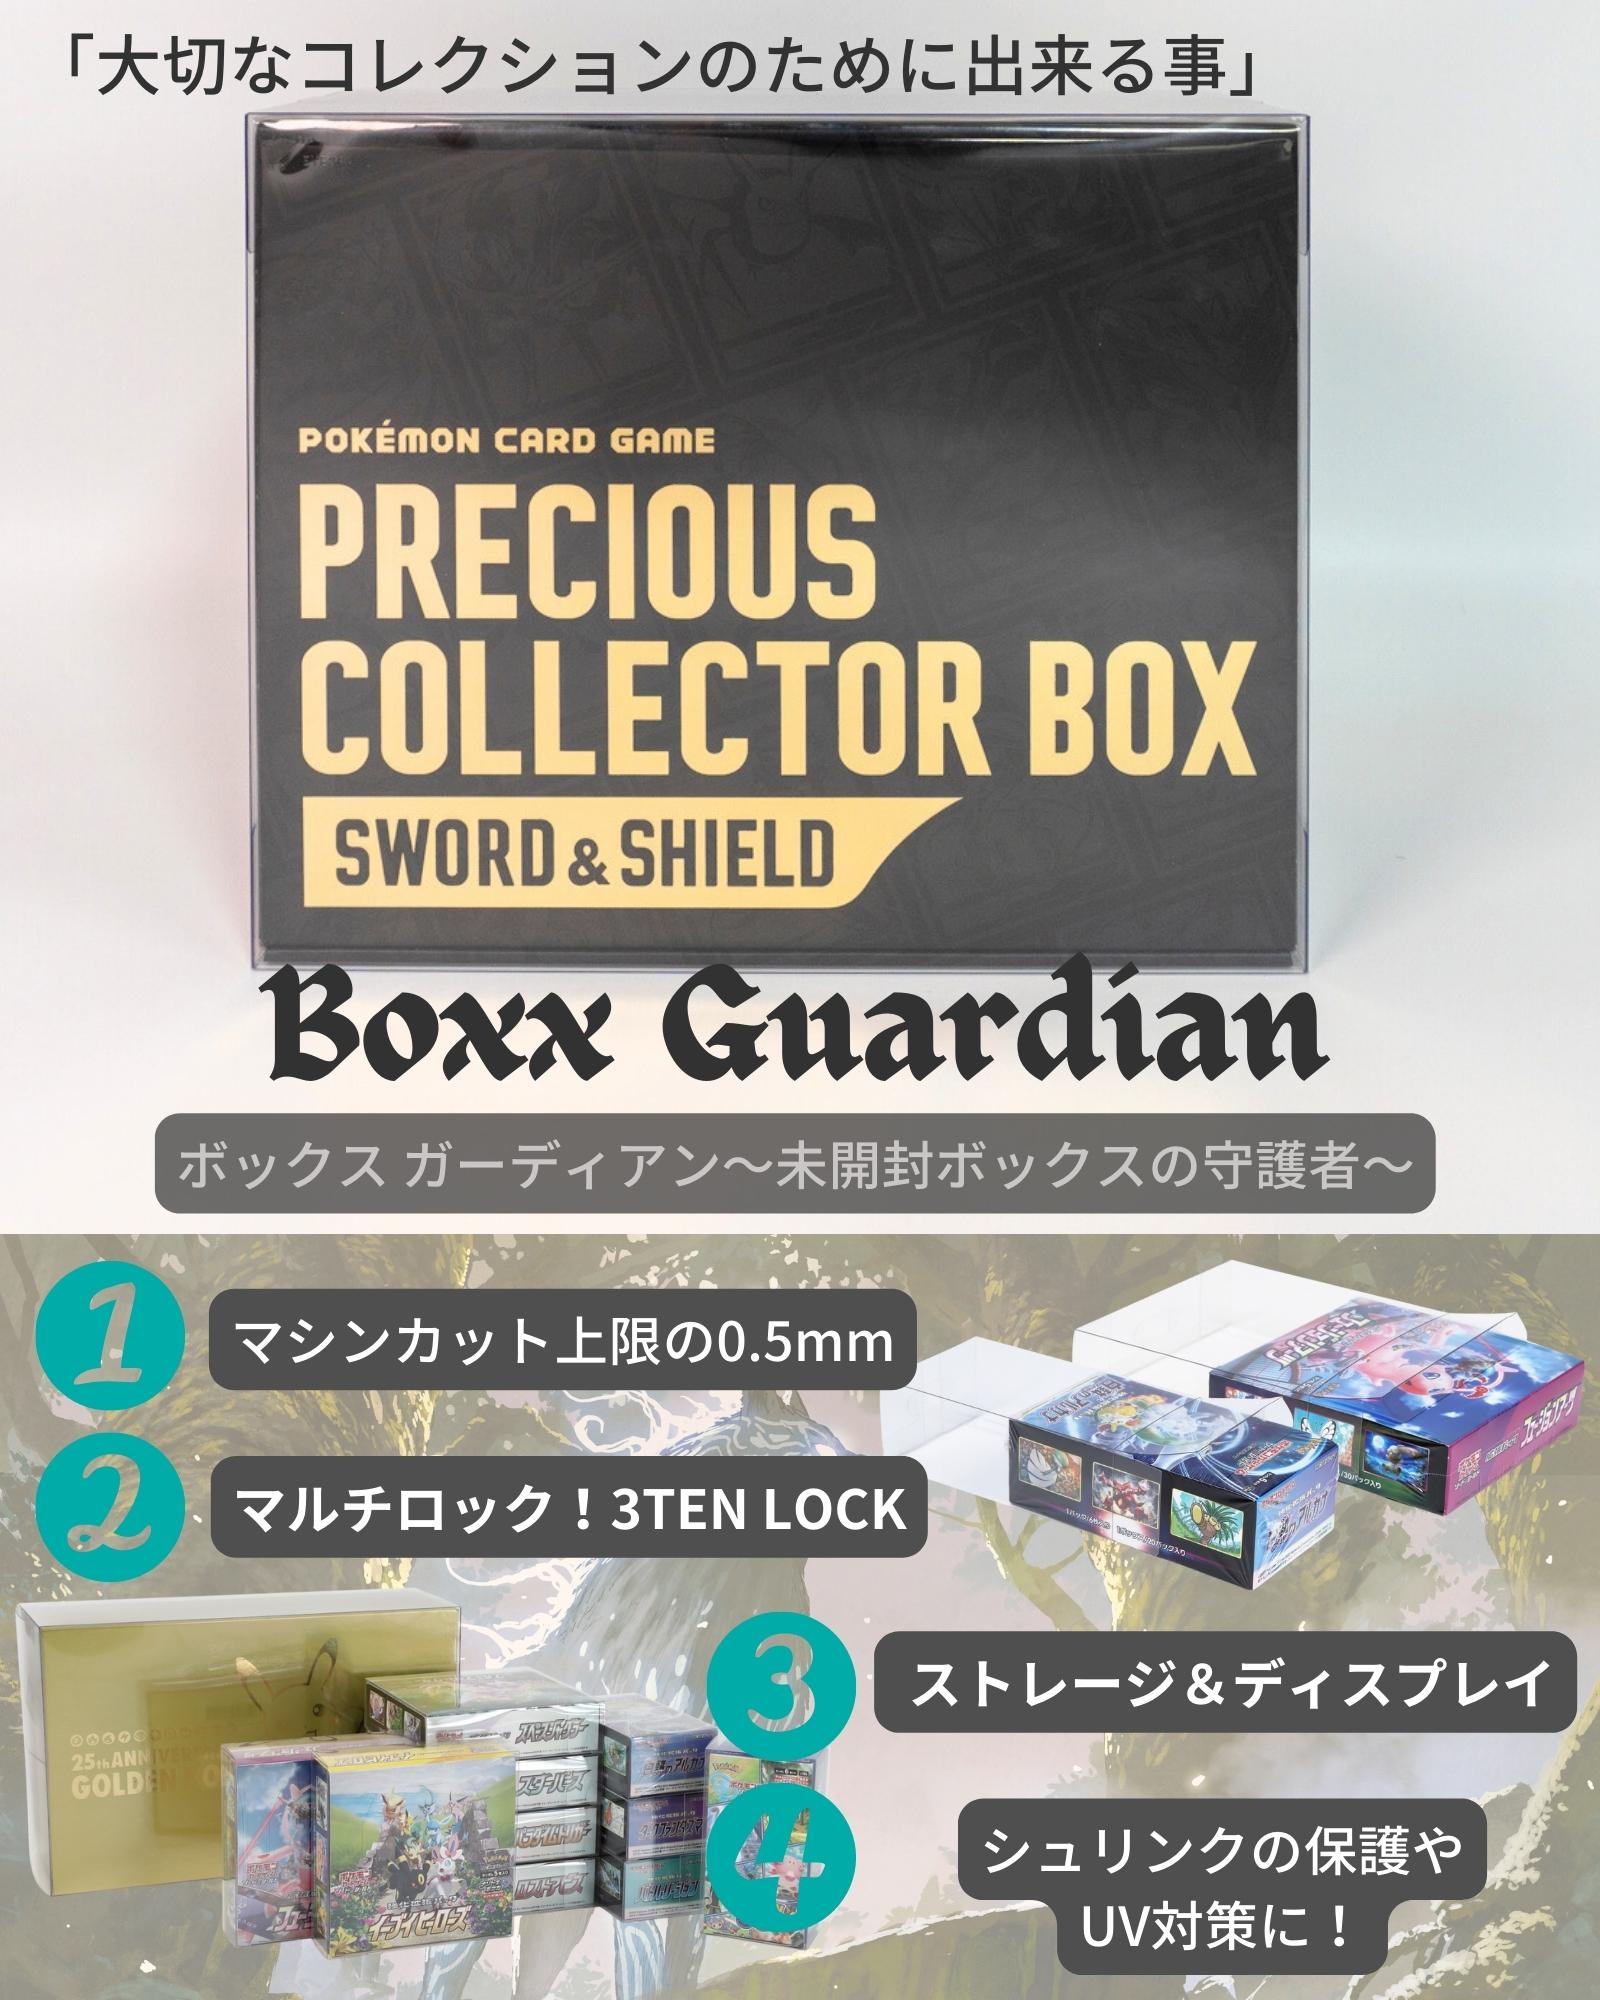 Boxx Guardian ポケモンカードBOX用 プレシャスコレクター